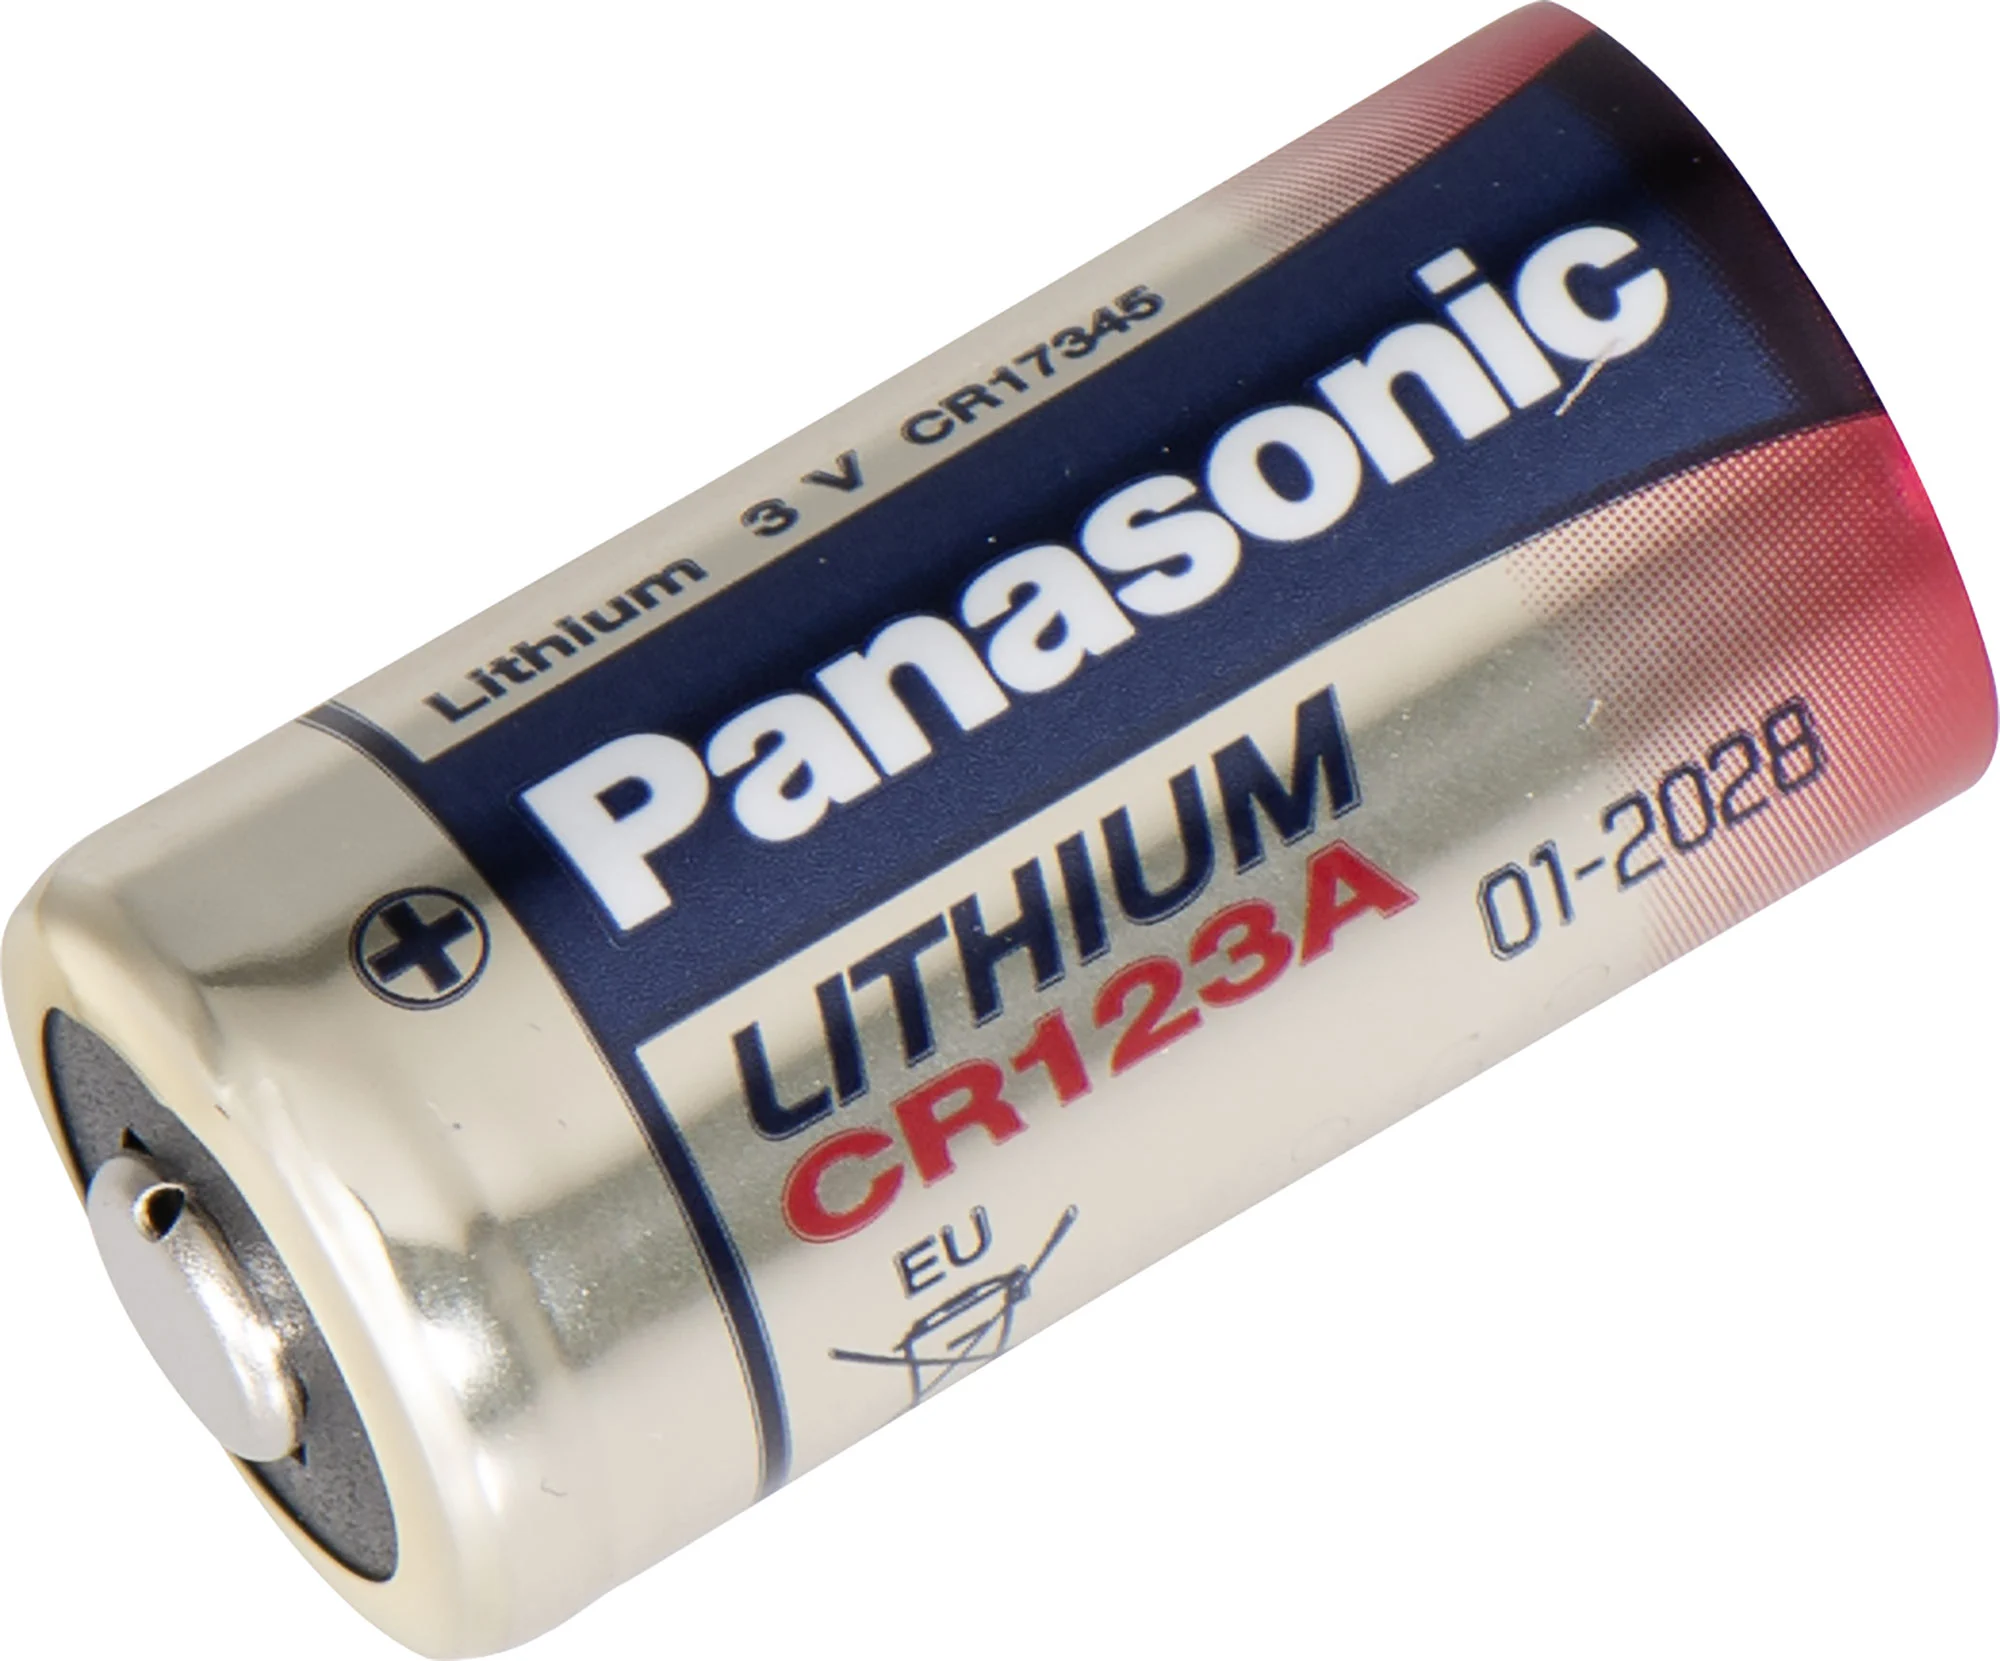 Accessoires Energie - Pile Lithium CR123A 3V Panasonic